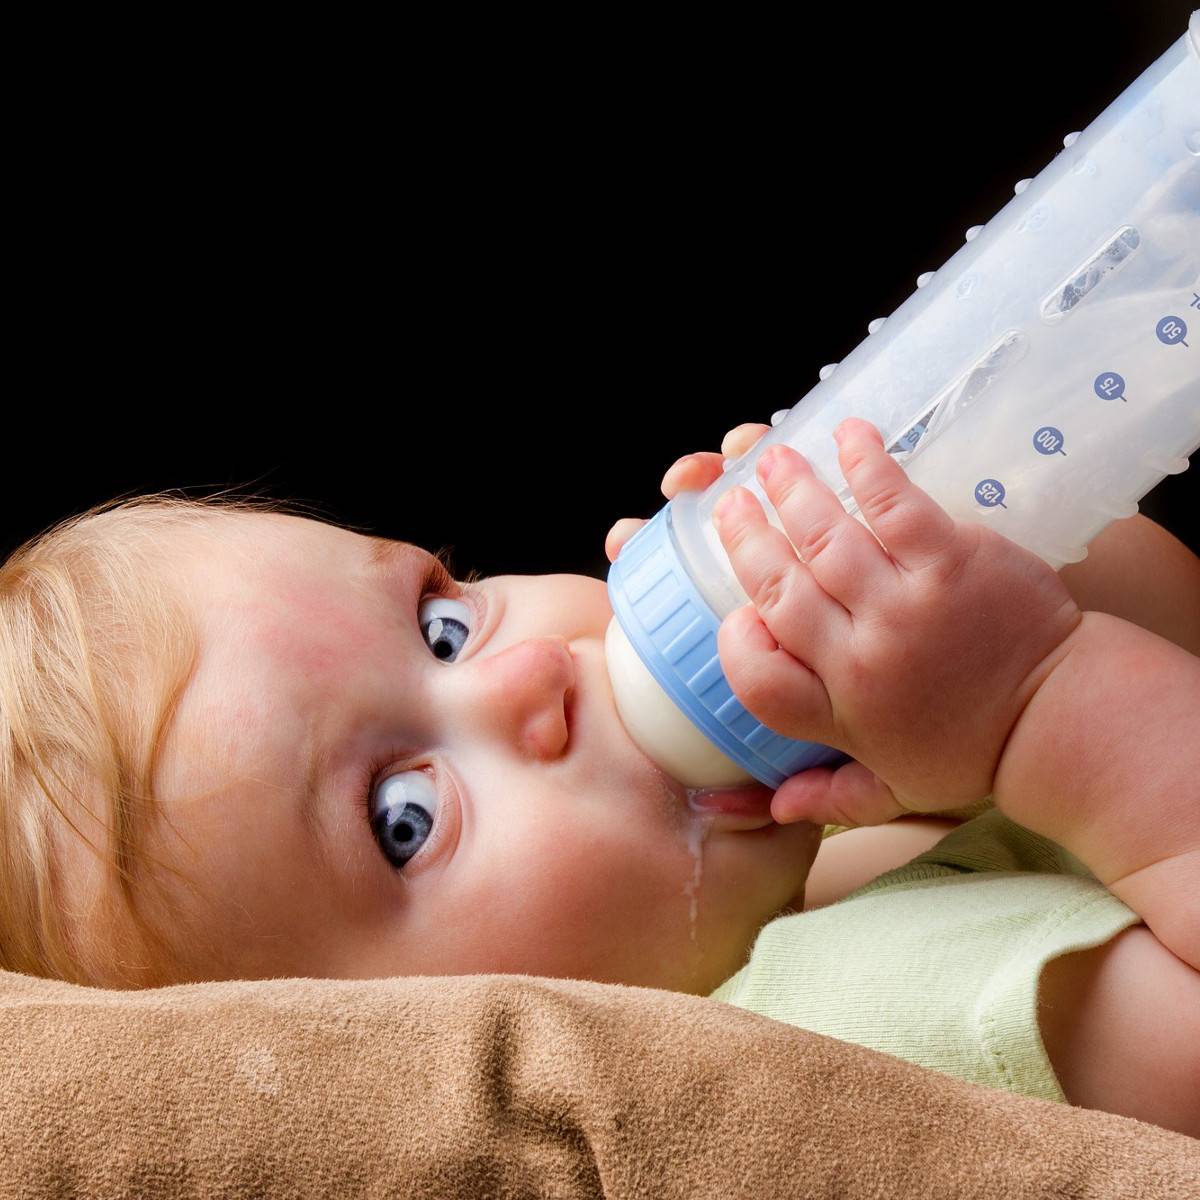 Как отучить ребенка от бутылочки